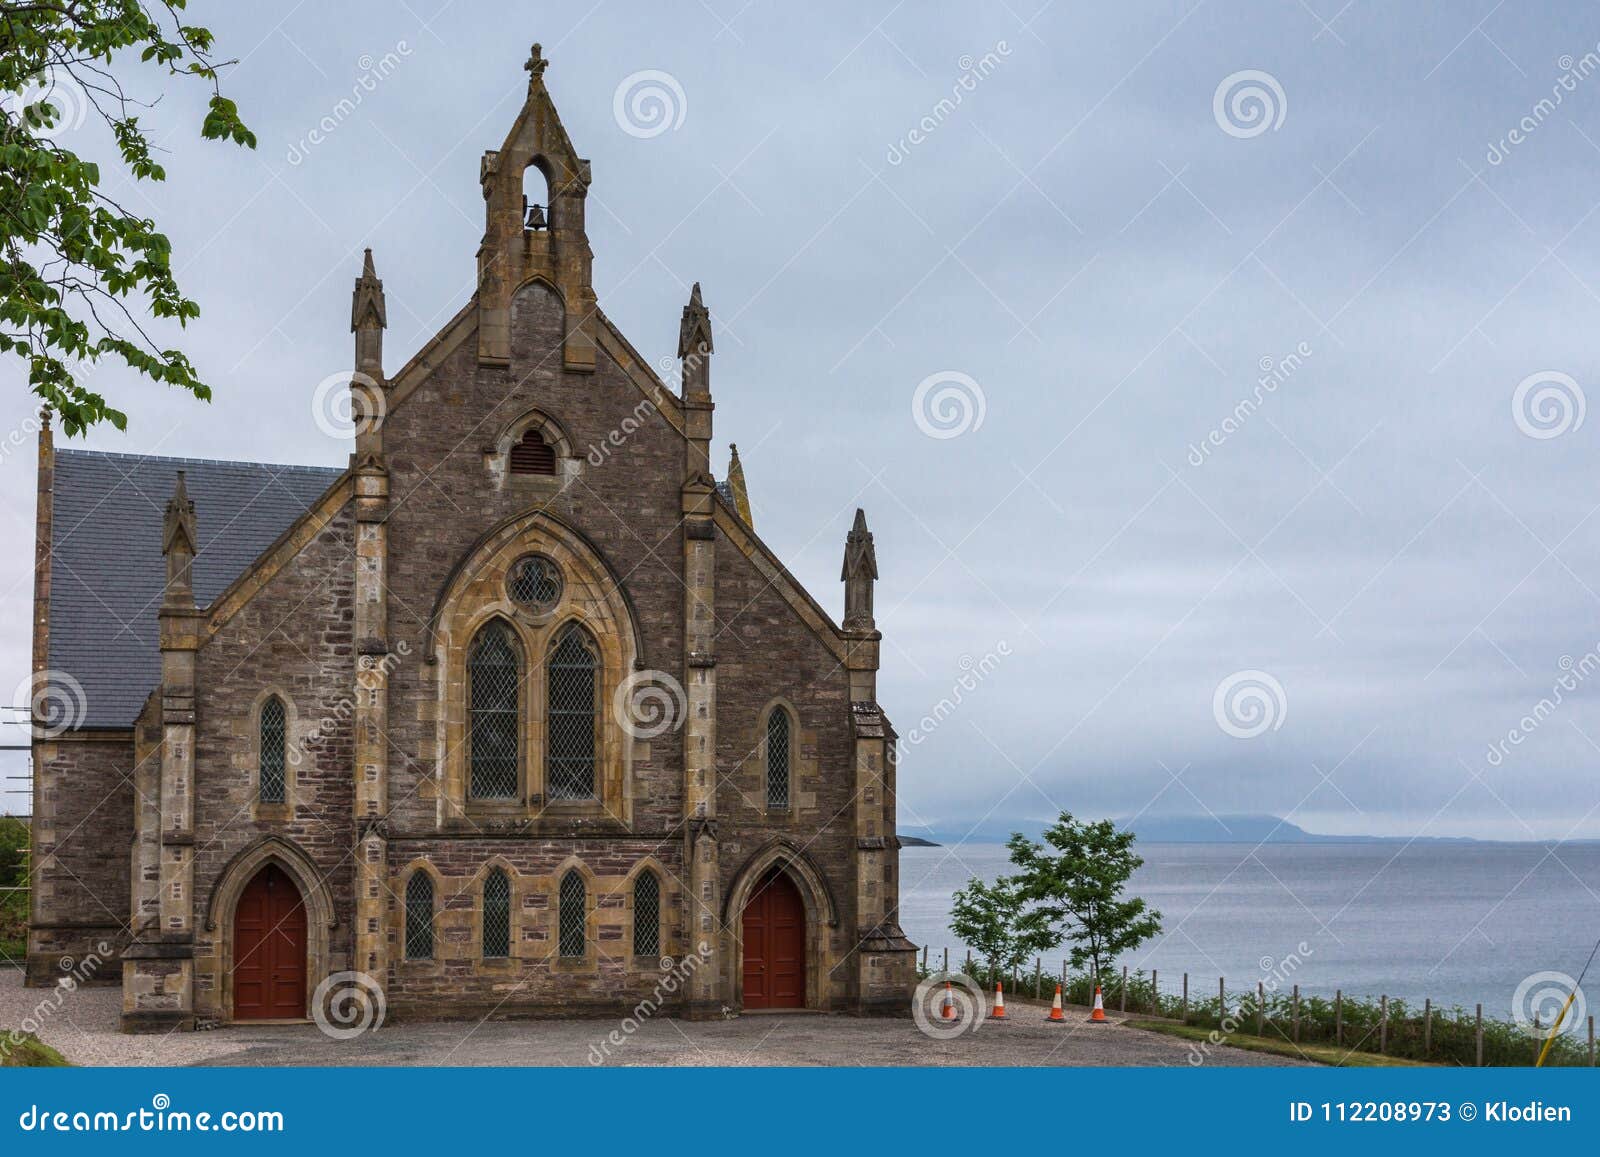 Iglesia Libre De Gairloch De Escocia, Higlands Occidental Escocia Imagen de  archivo - Imagen de entrada, escocia: 112208973